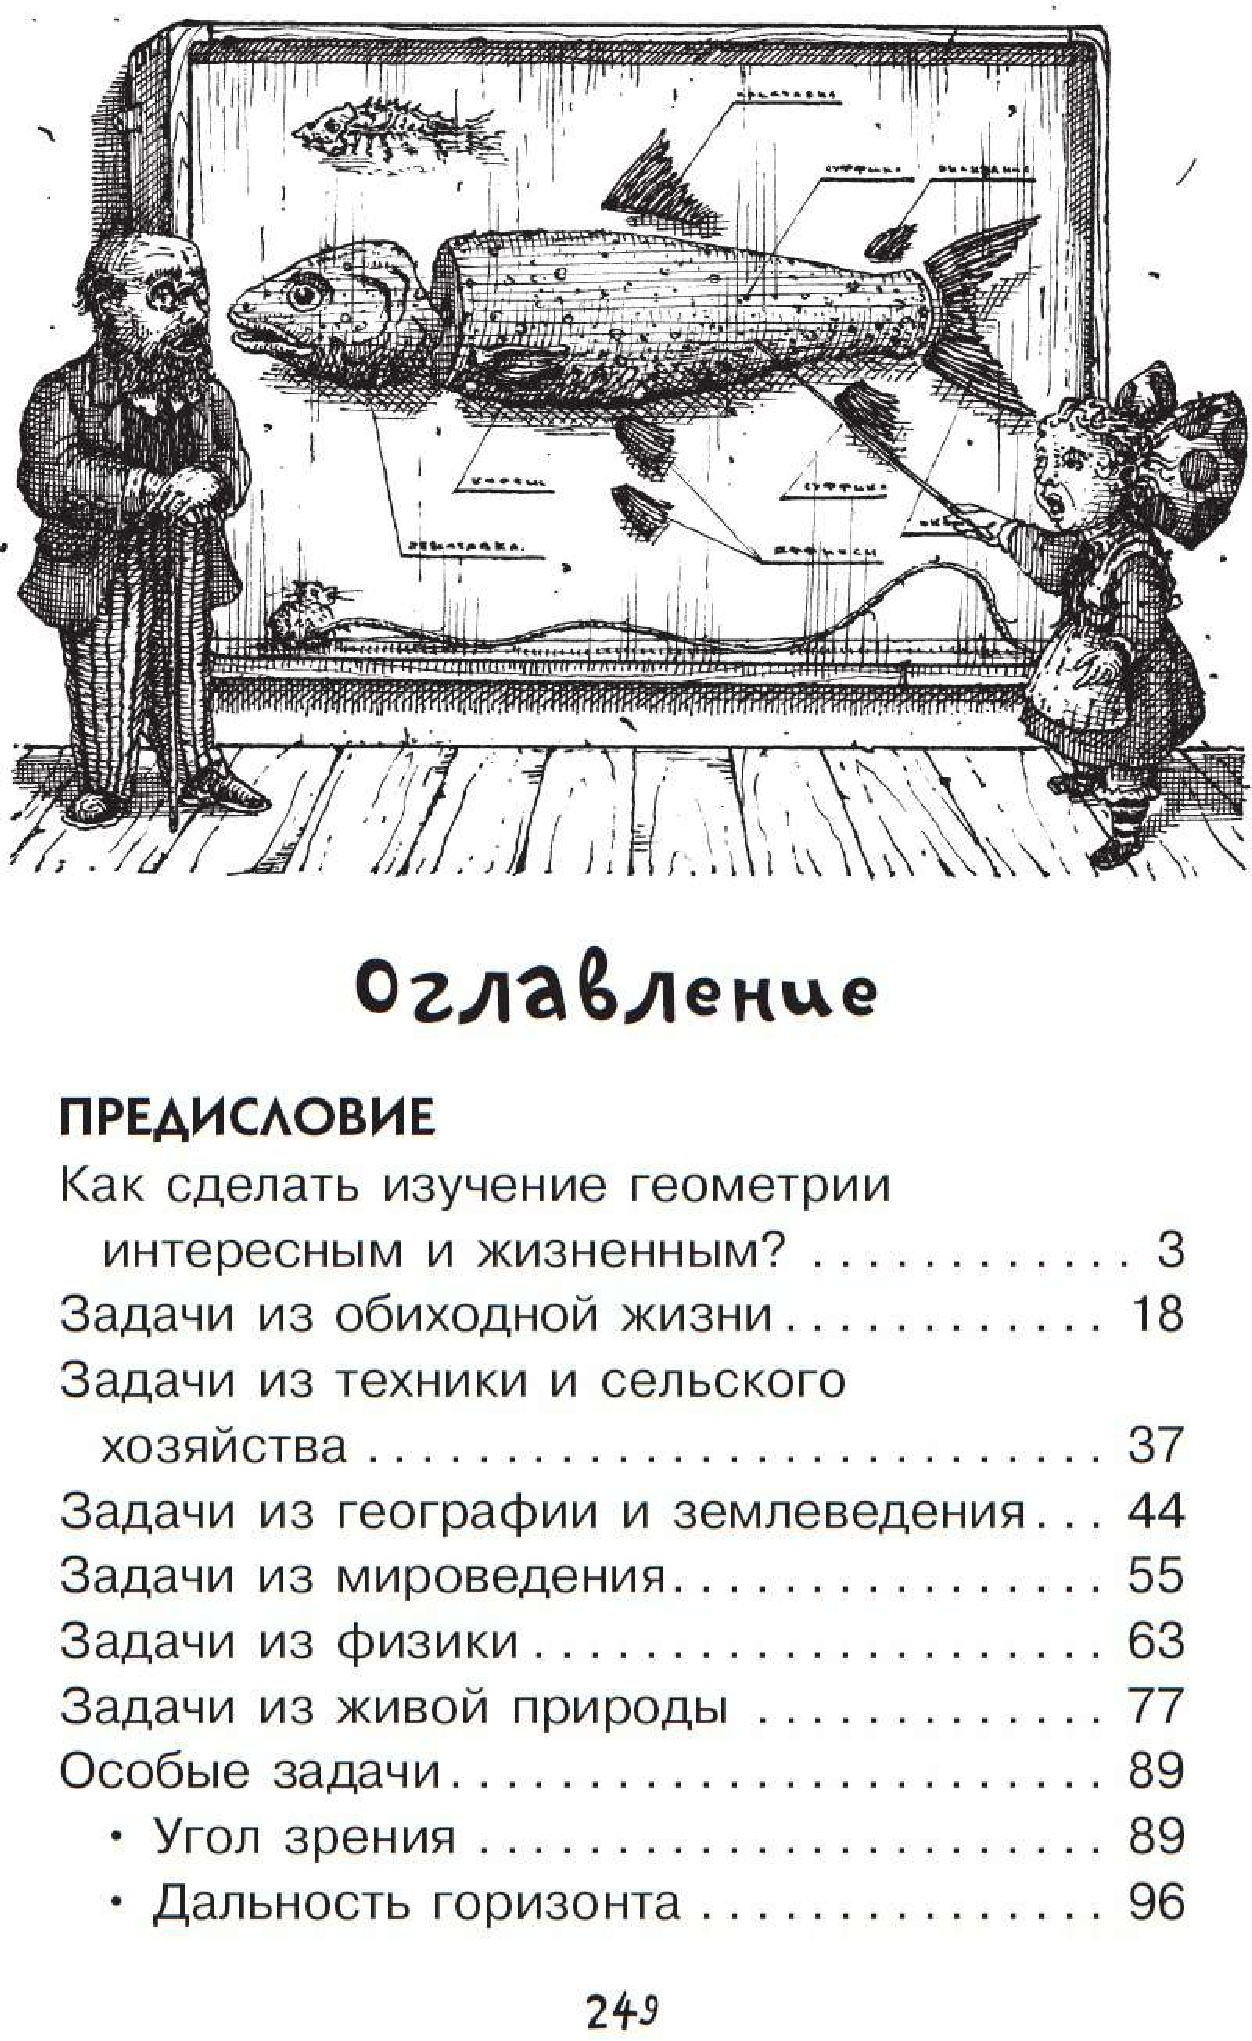 Геометрия для любознательных (Перельман Яков Исидорович) - фото №5